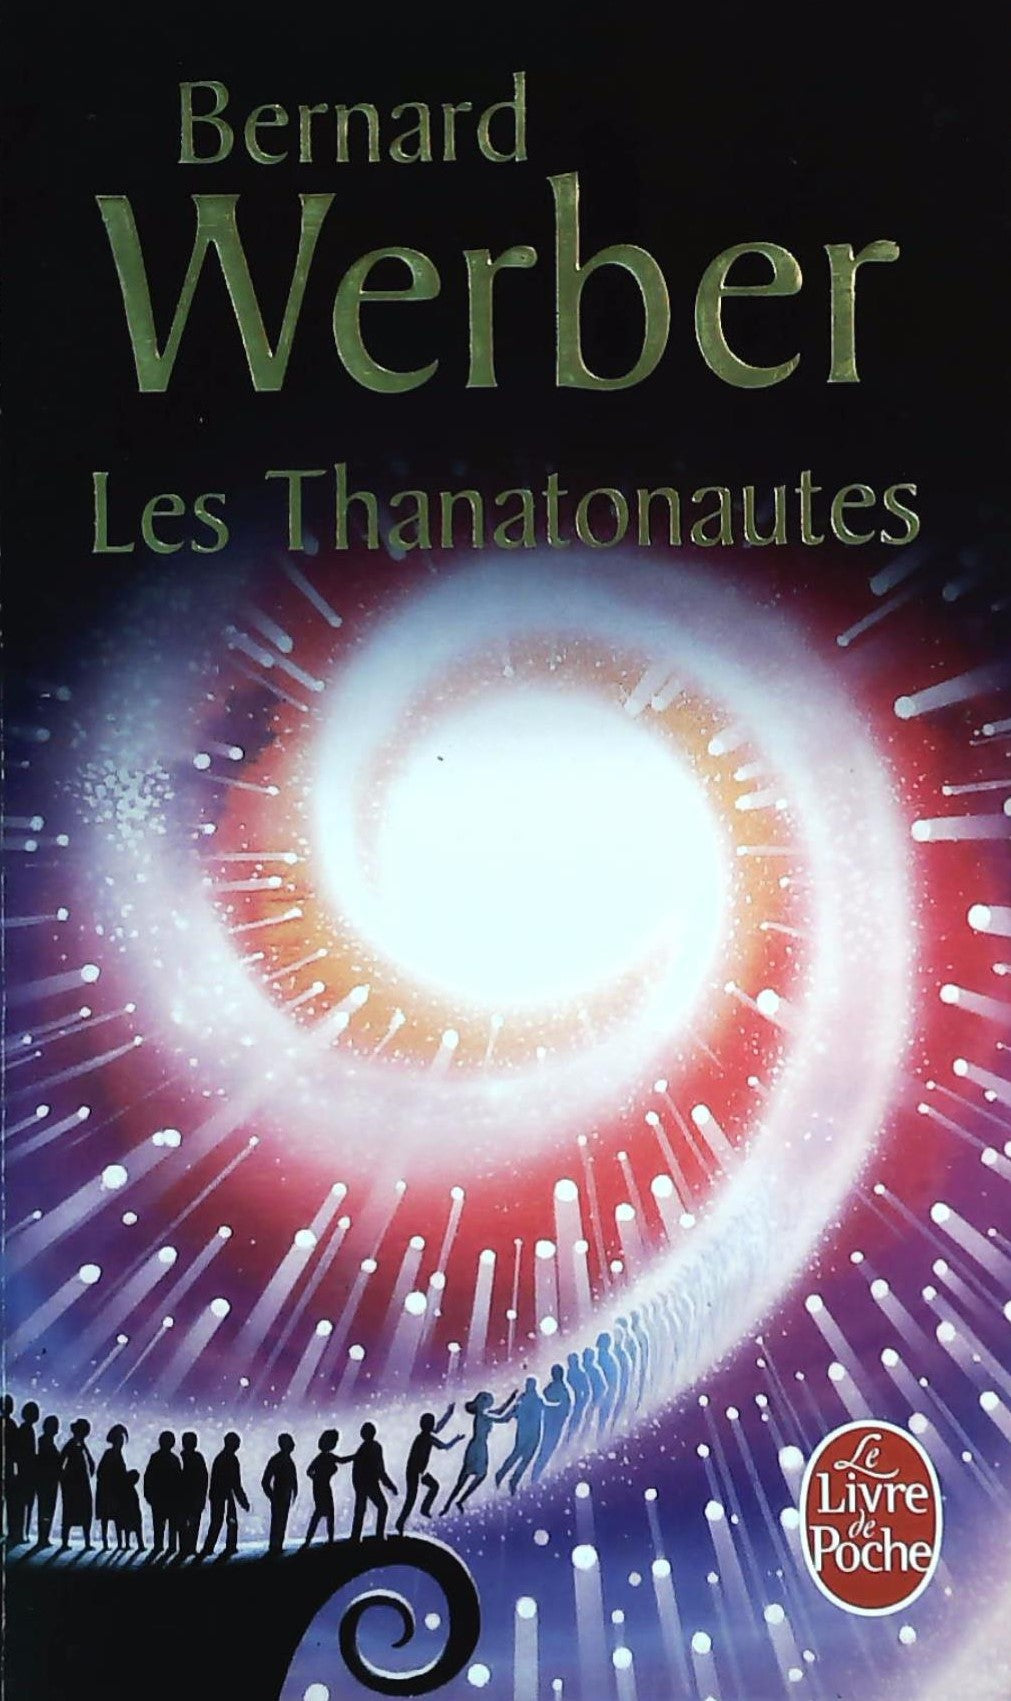 Livre ISBN 225313922X Les Thanatonautes (Bernard Werber)